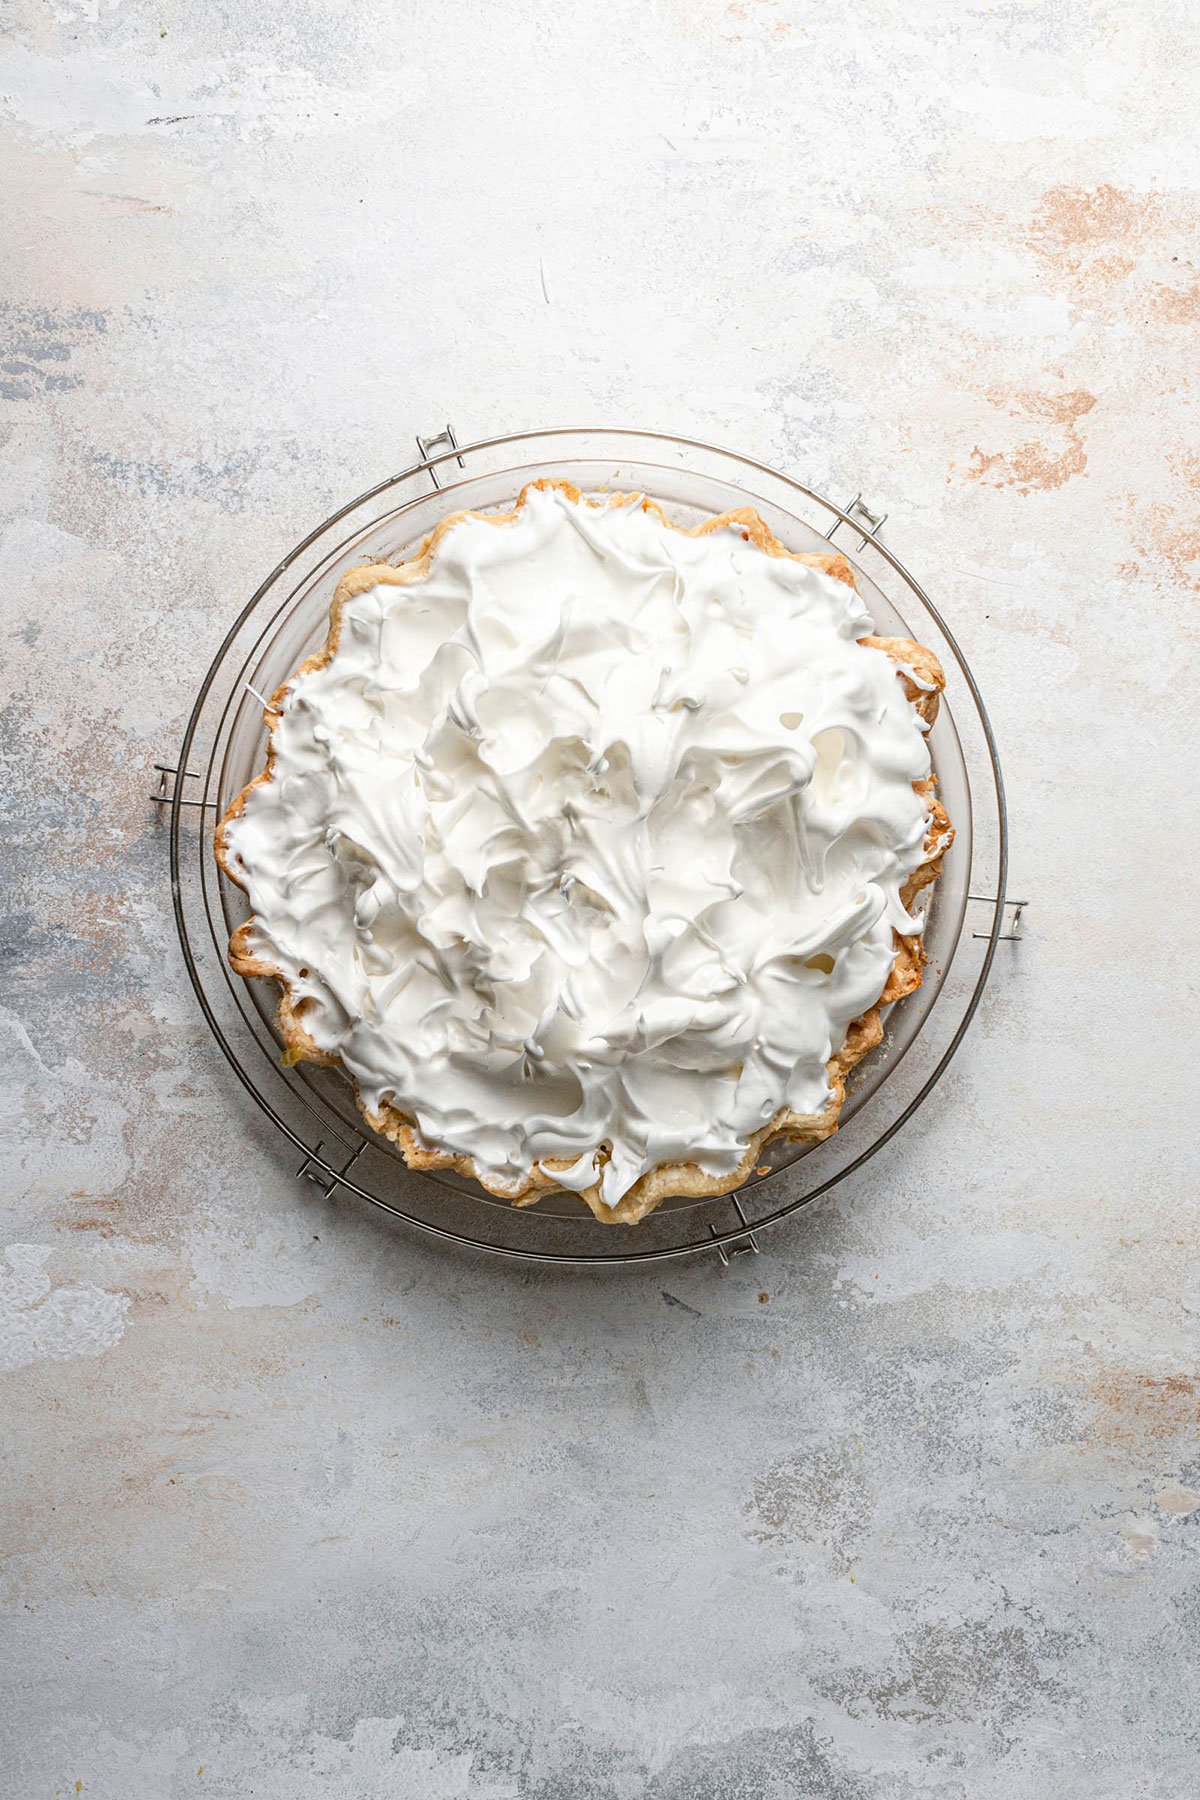 Meringue on top of a lemon meringue pie.